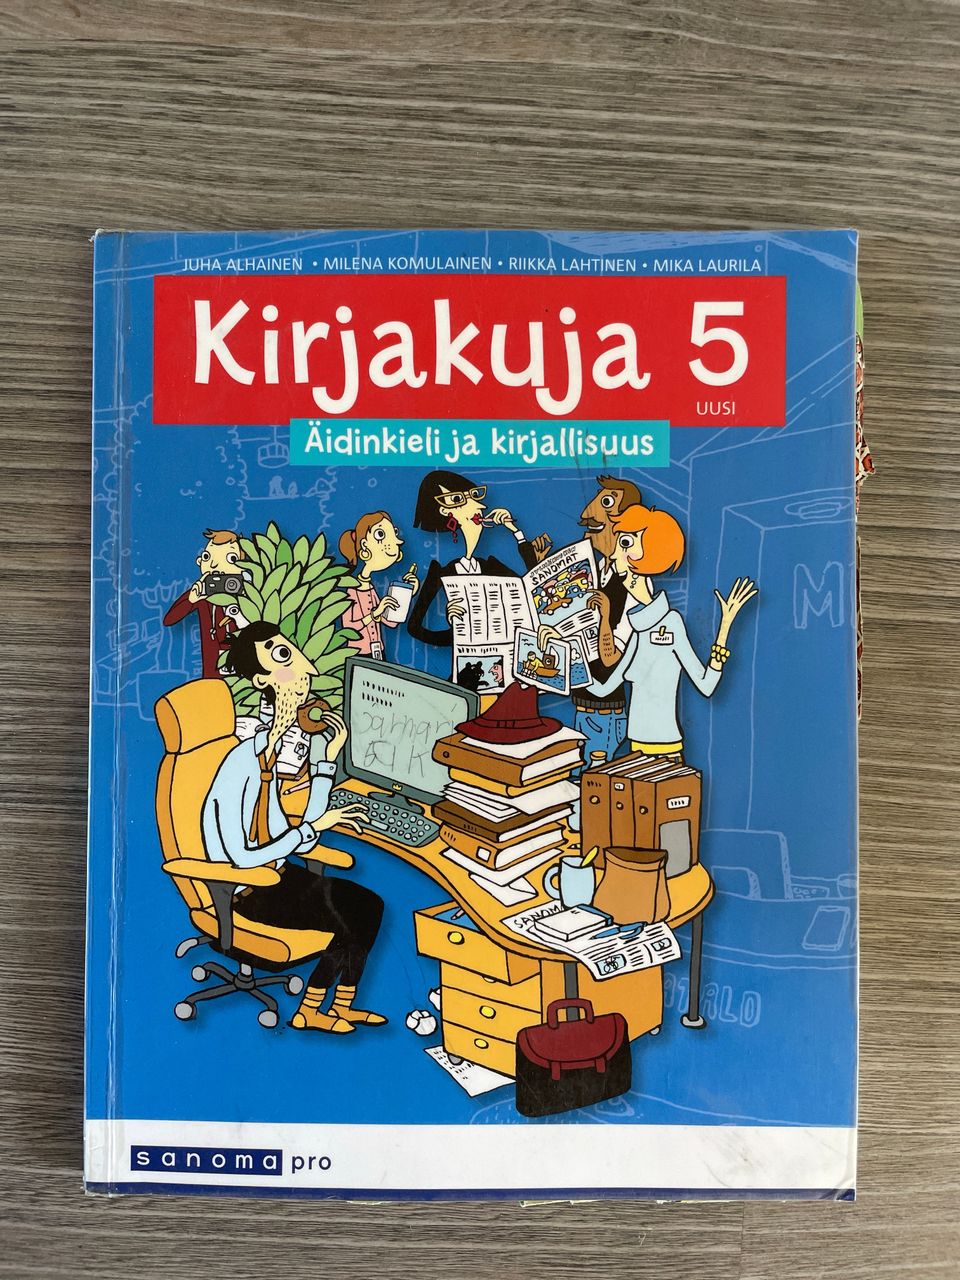 Suomenkielen kirja, Kirjakuja 5